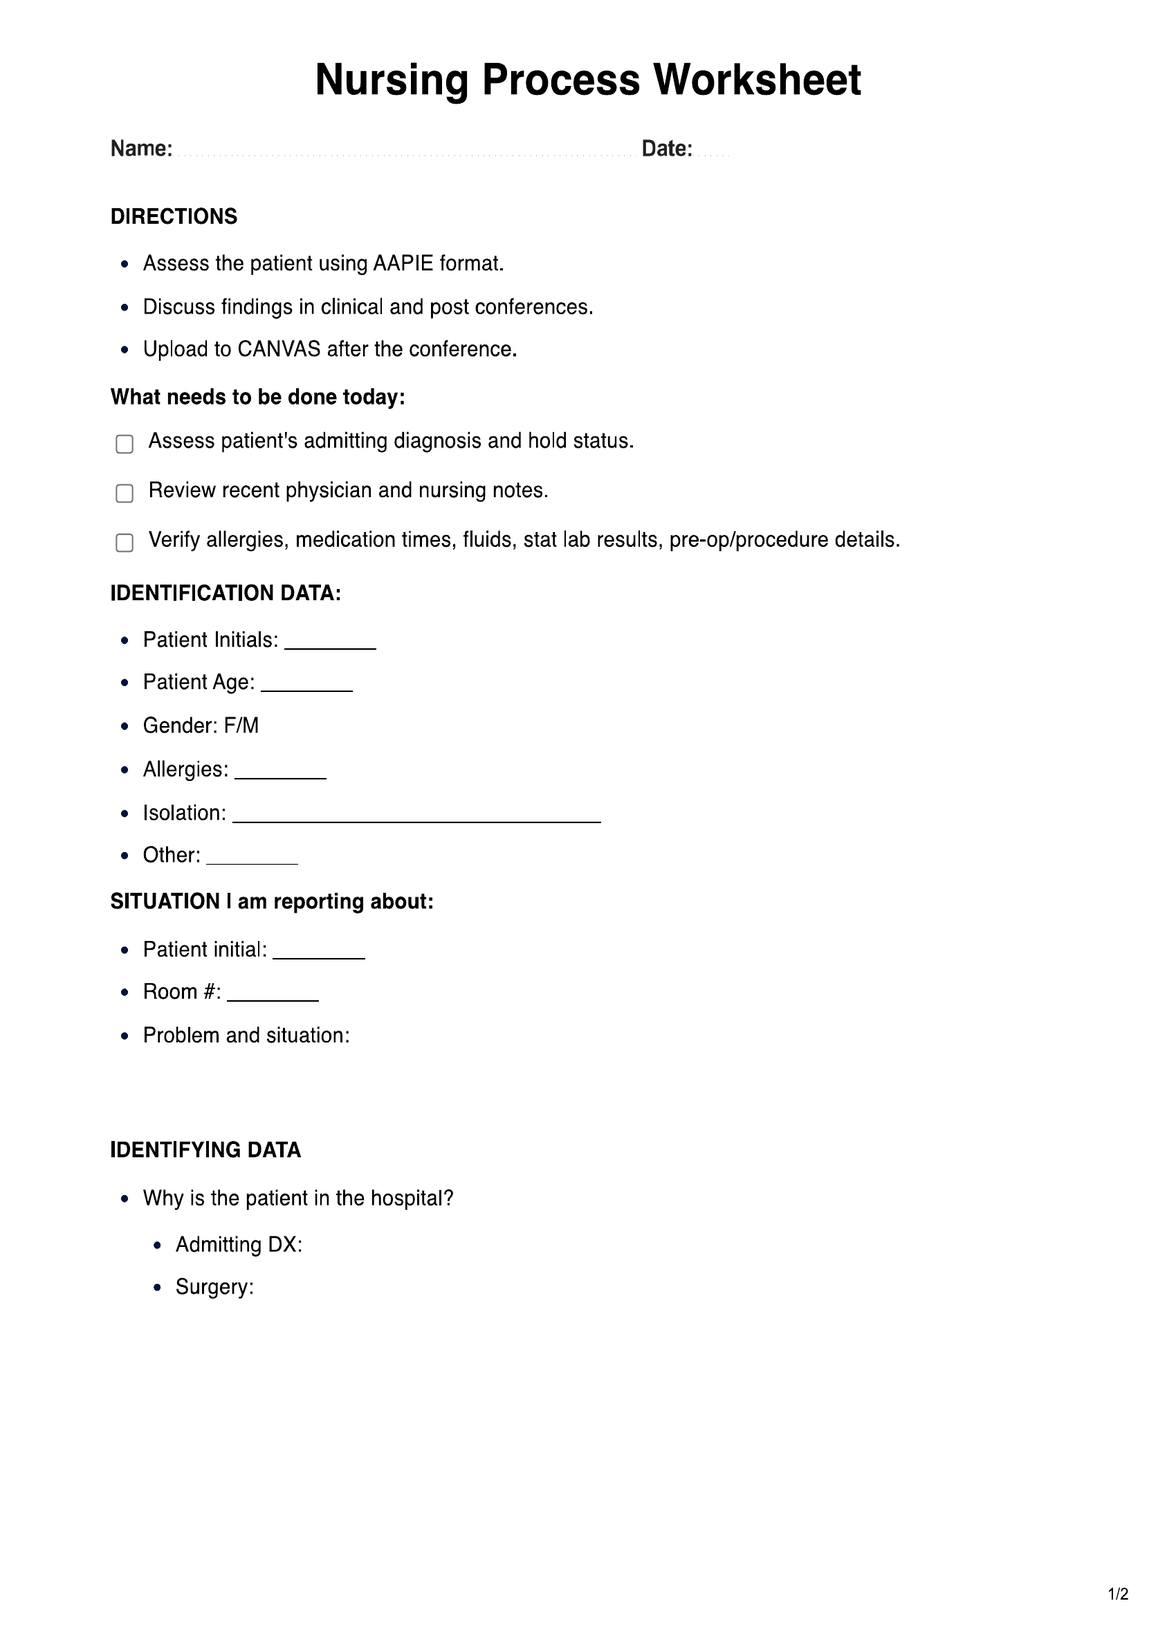 Nursing Process Worksheet PDF Example